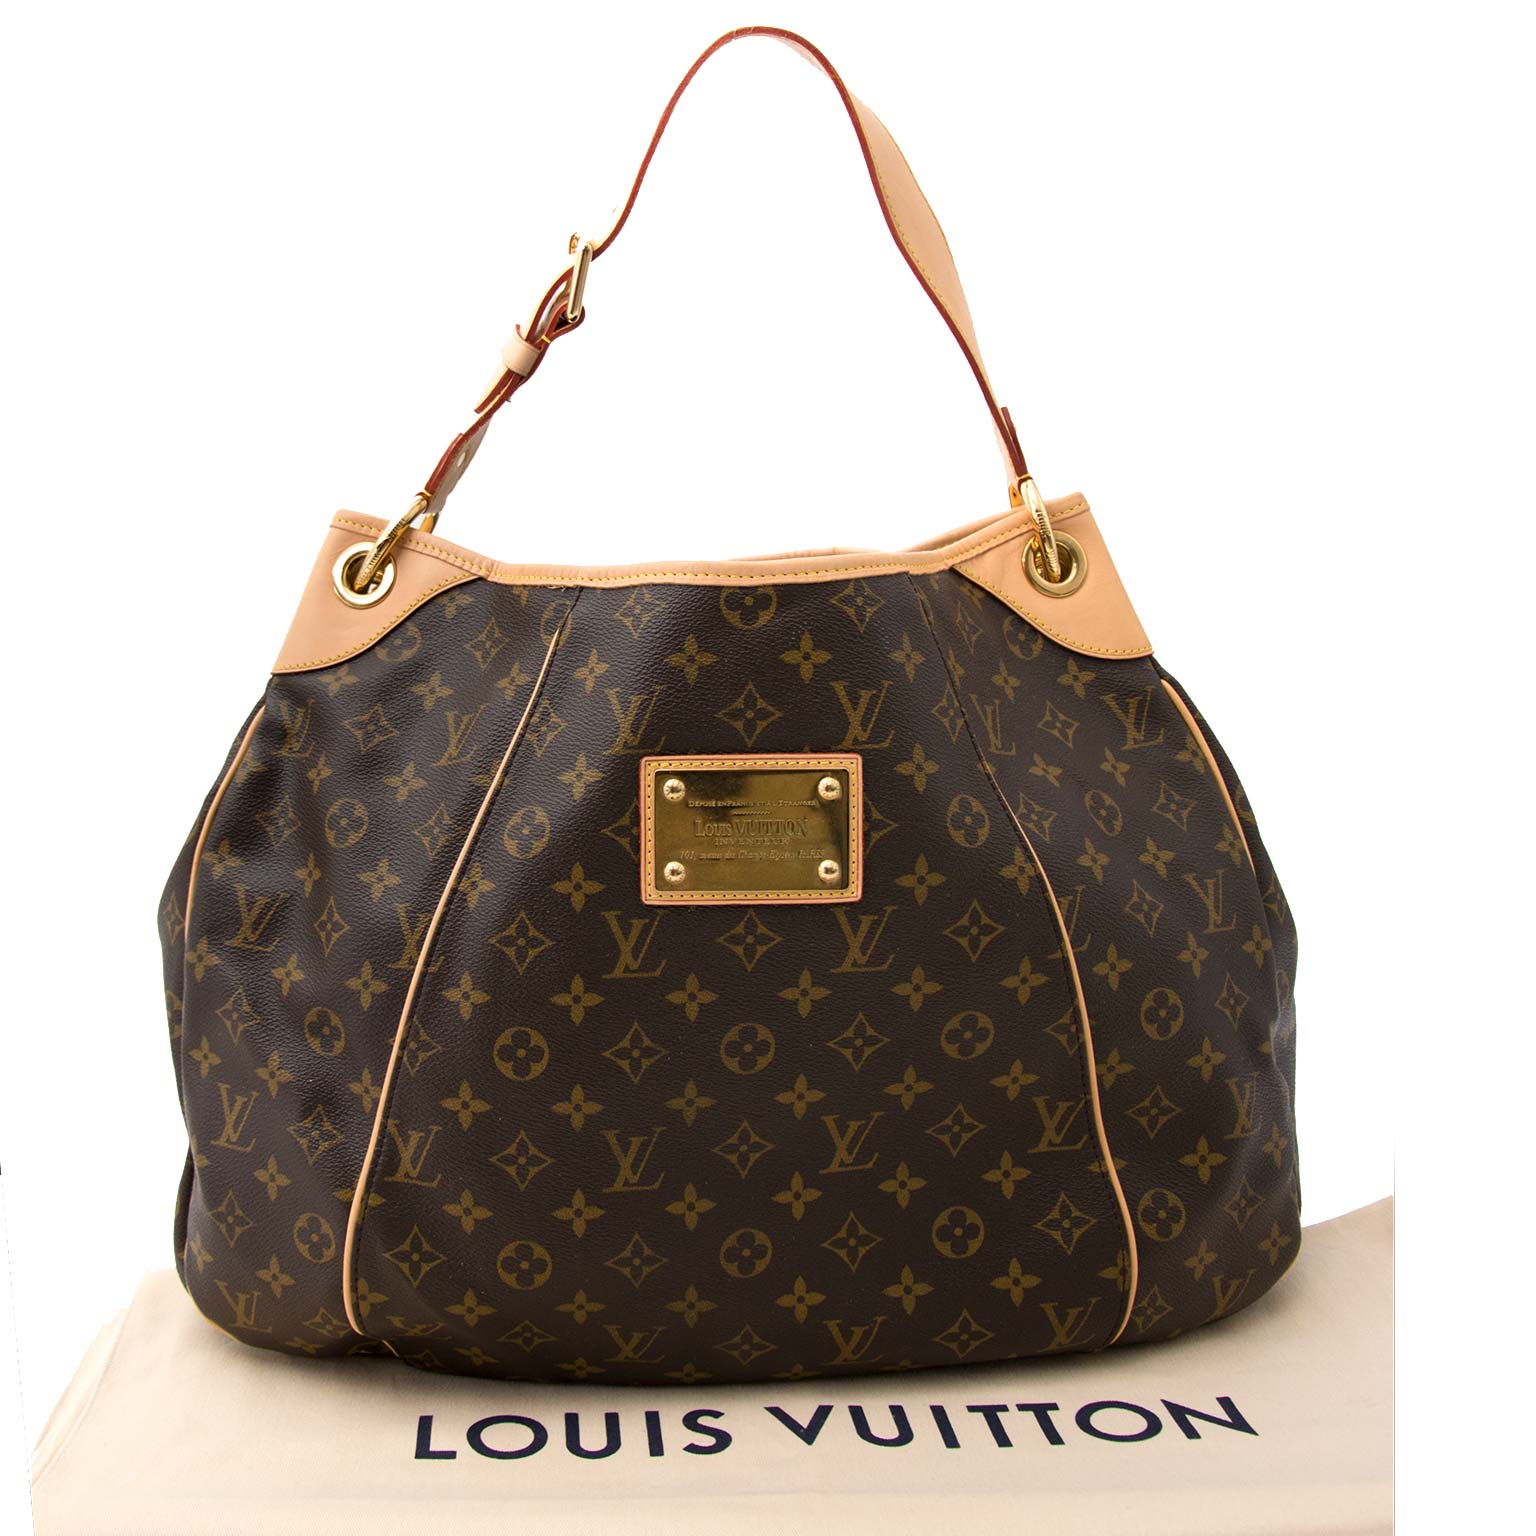 PRELOVED Louis Vuitton Galleria PM Monogram Bag SP1150 071123